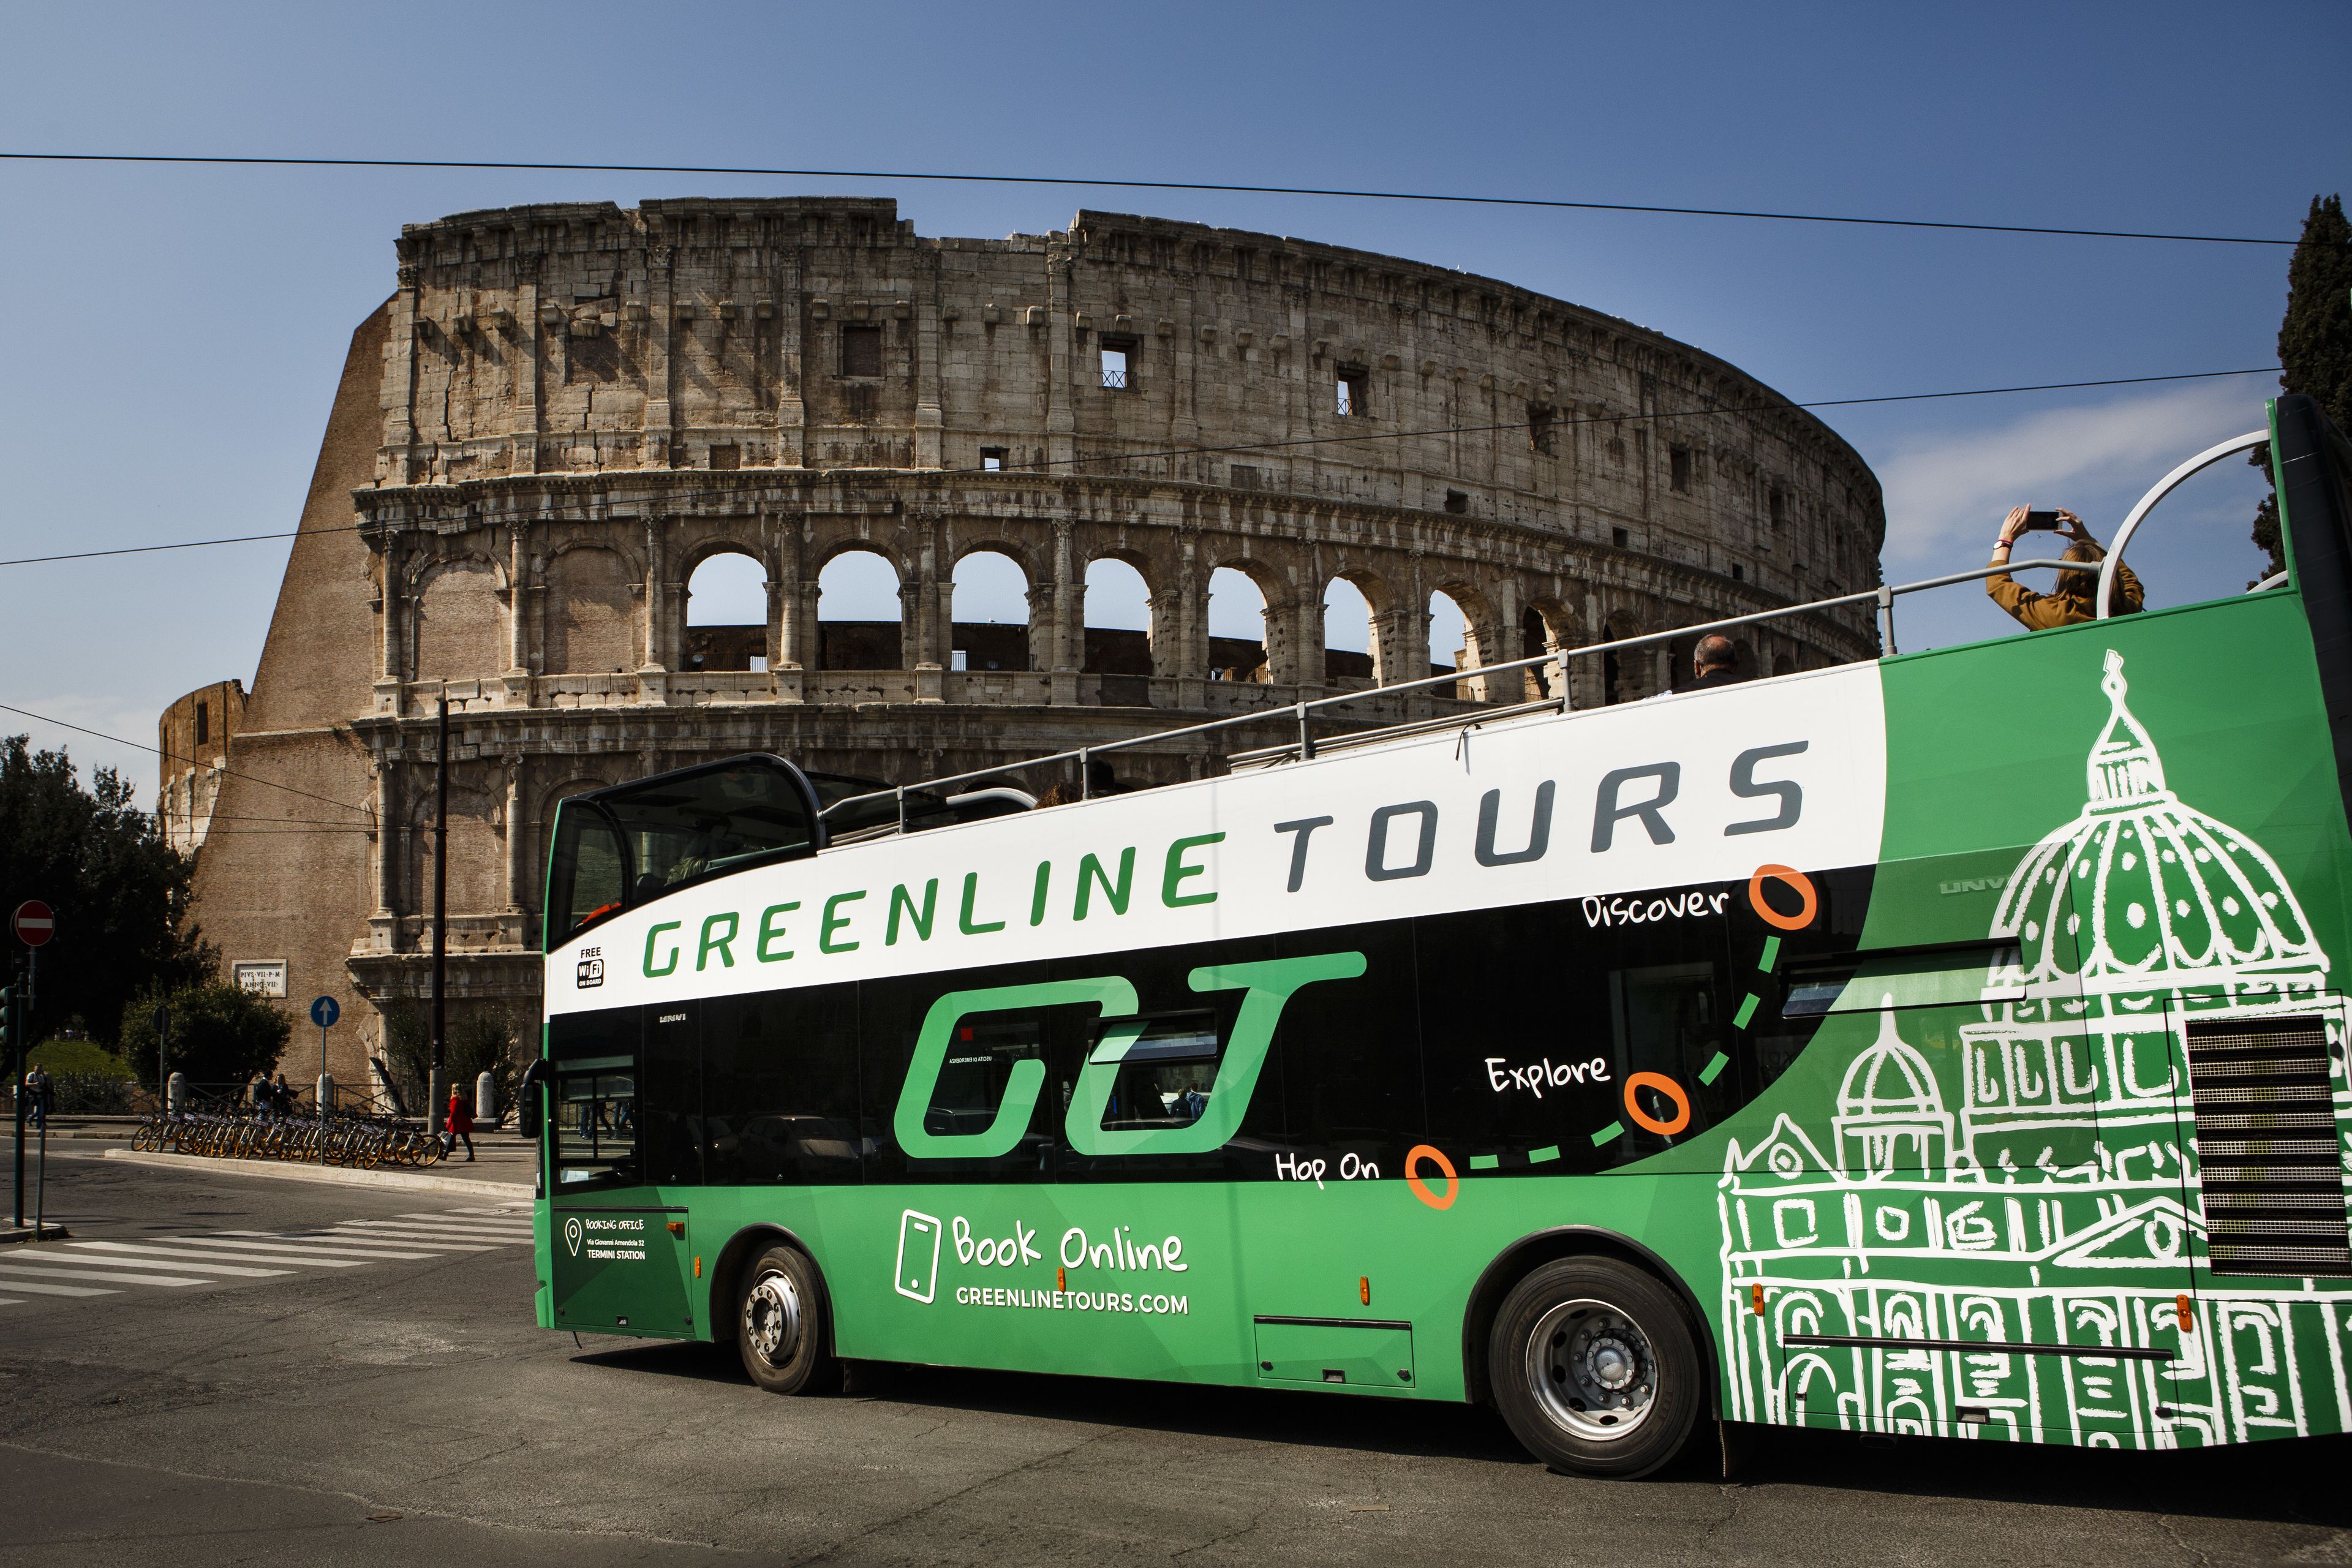 bus visite rome open tour